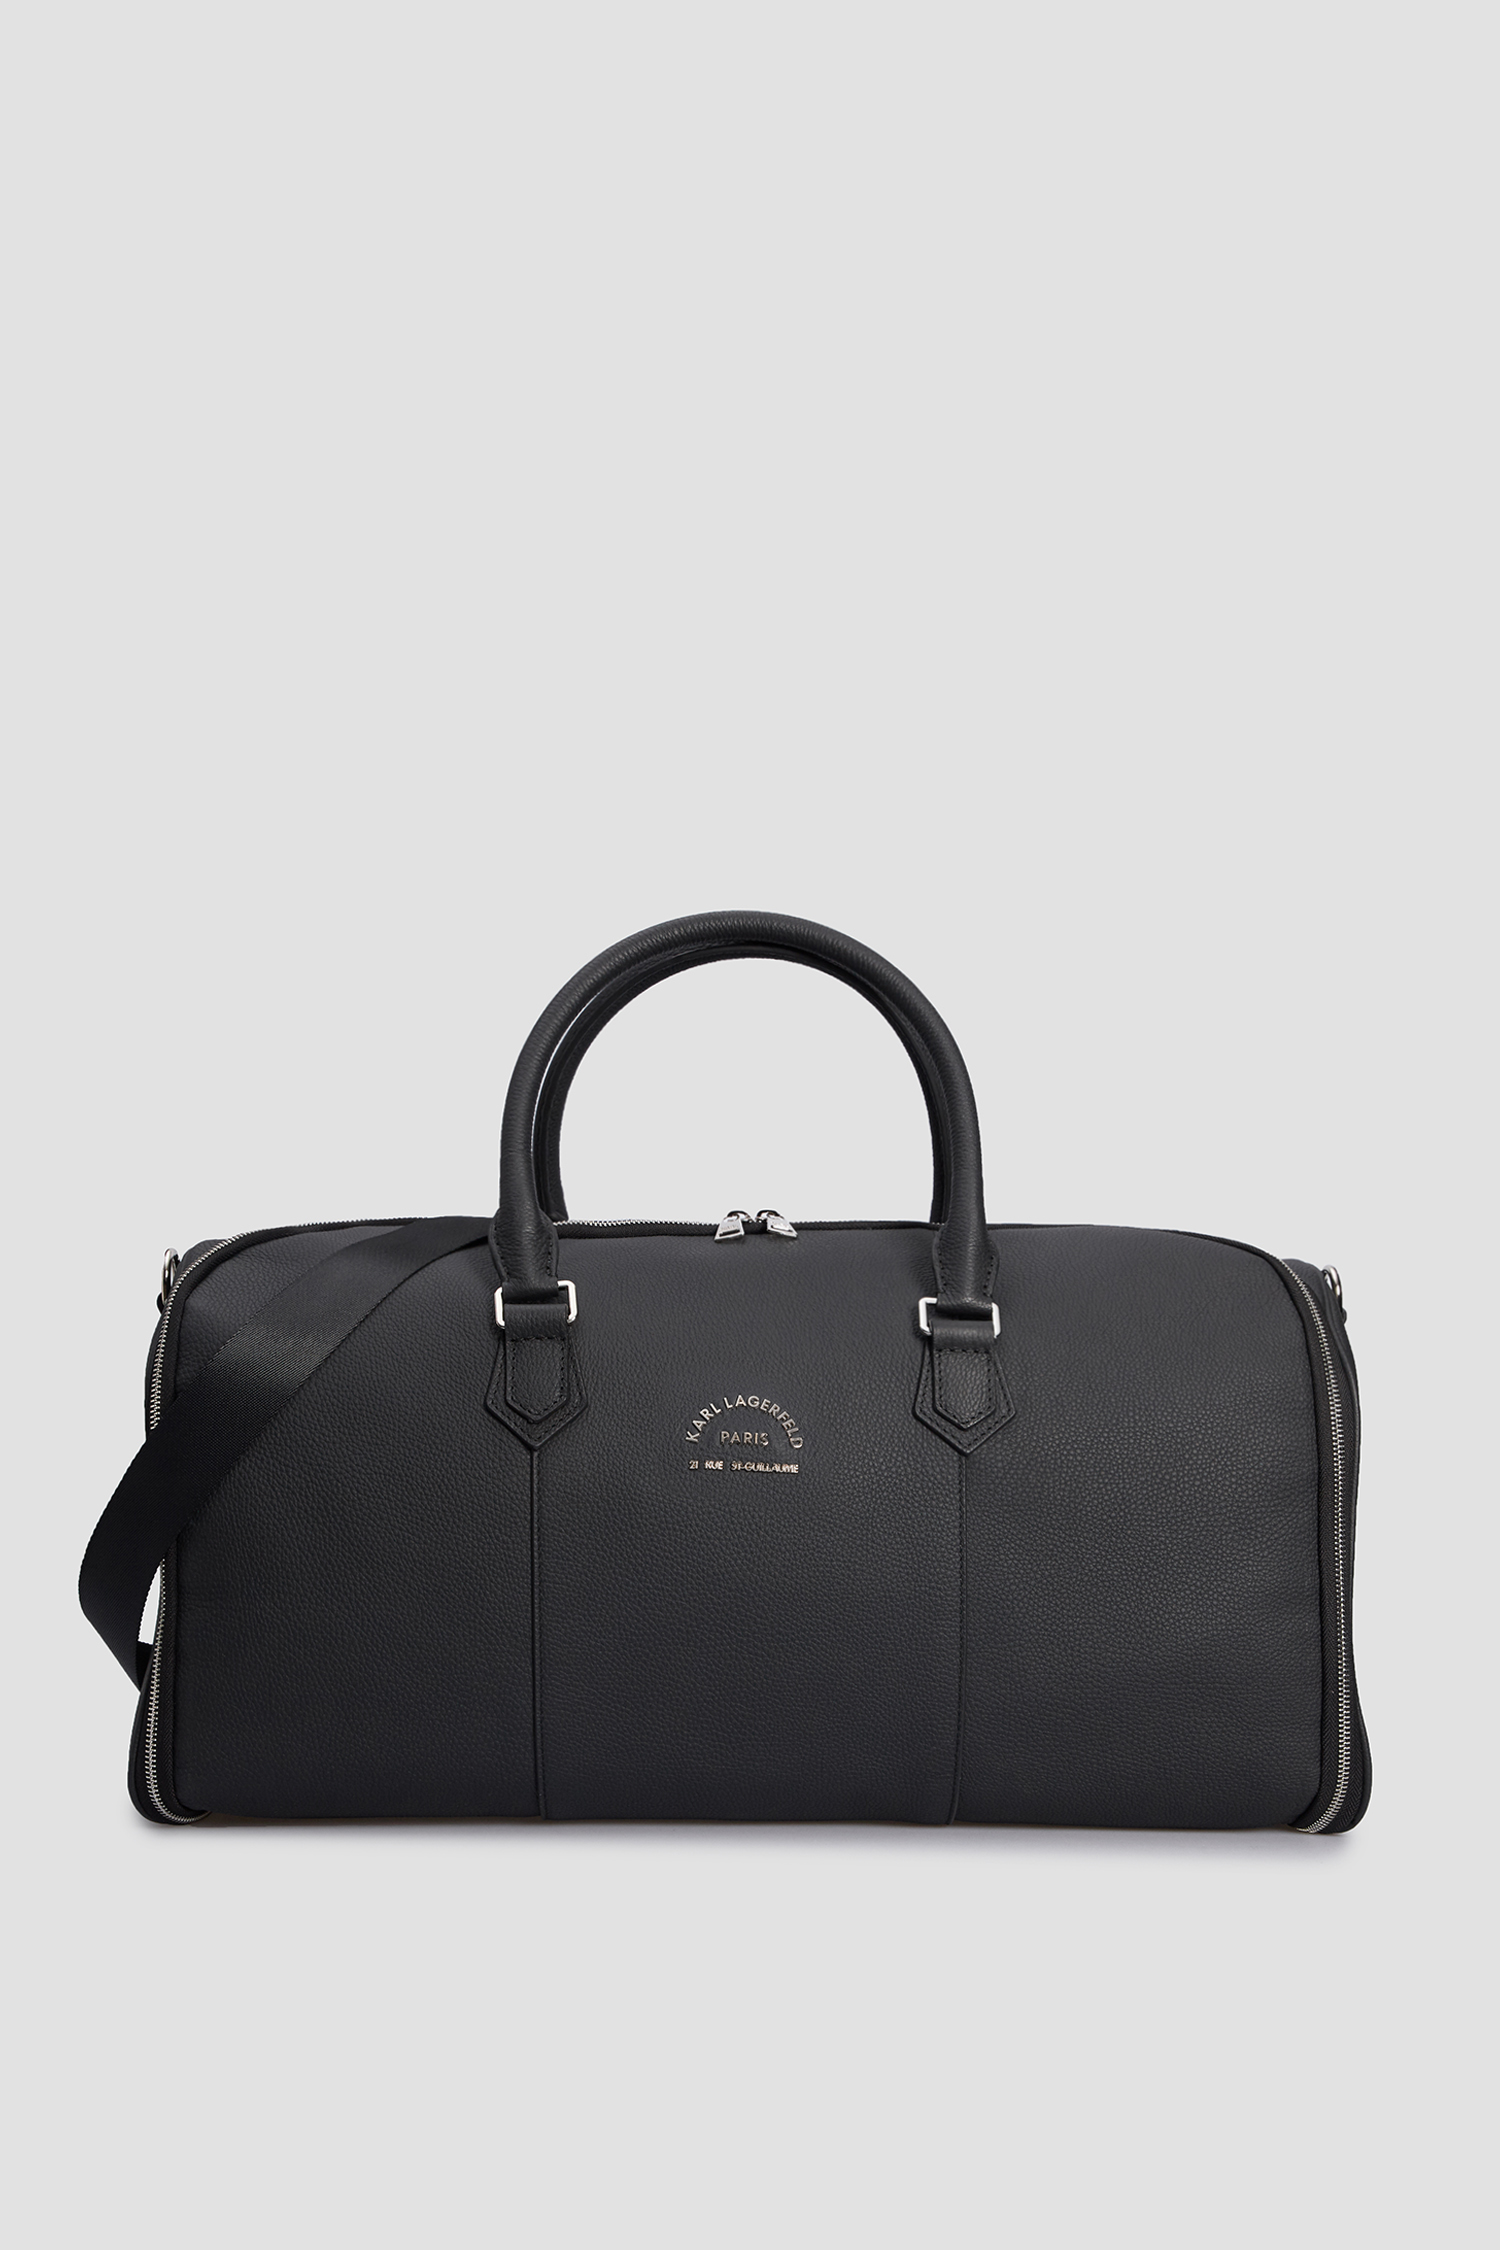 Чоловіча чорна шкіряна дорожня сумка Karl Lagerfeld 532451.815930;990